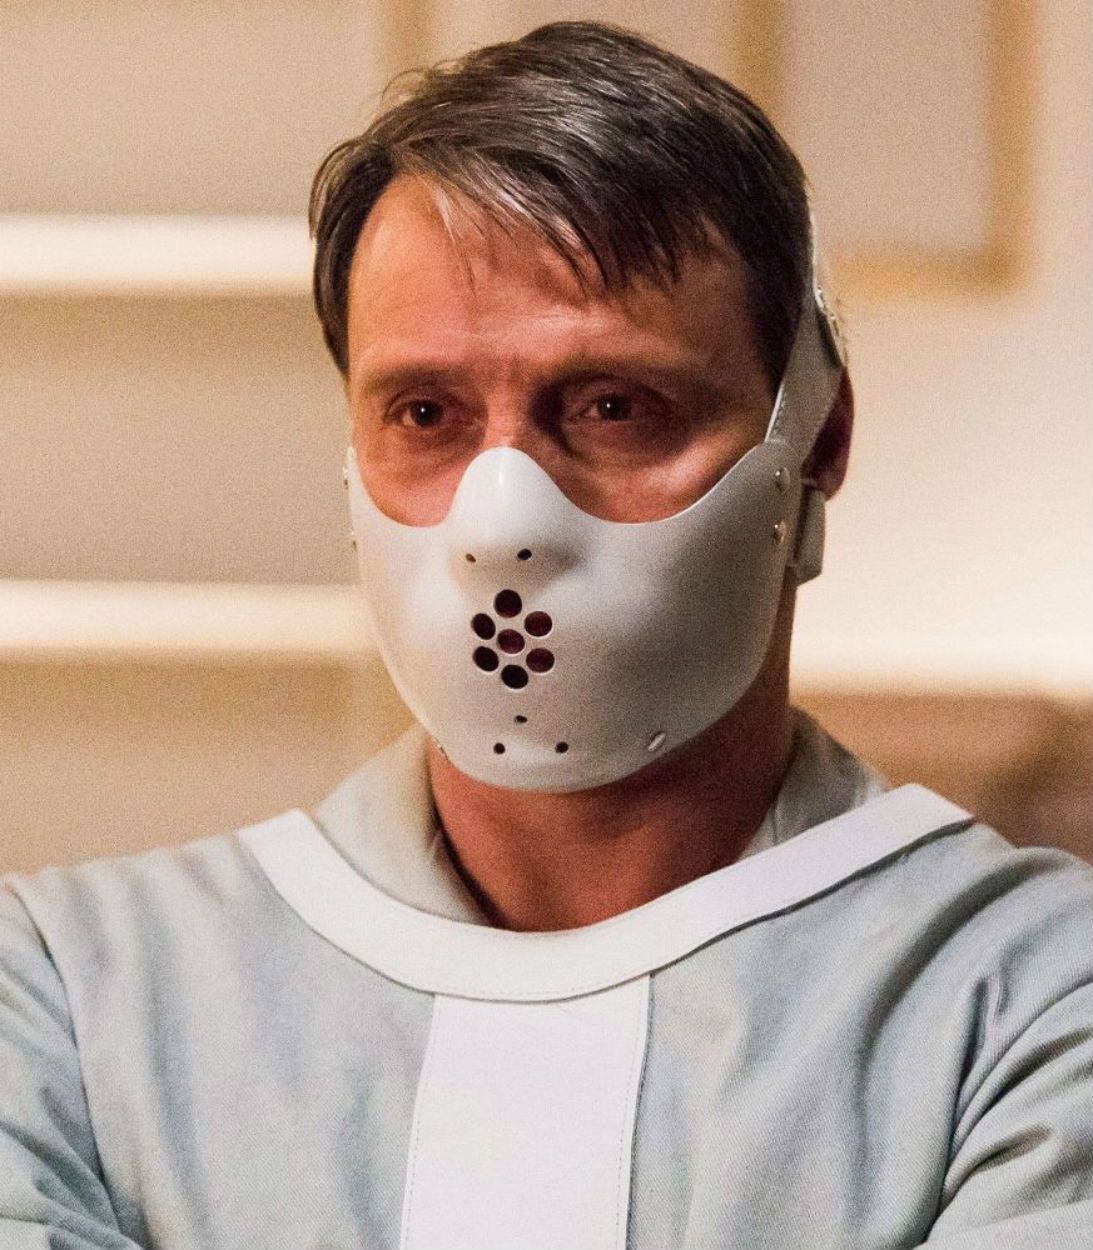 Mads Mikkelsen as Hannibal Lecter in Mask Vertical